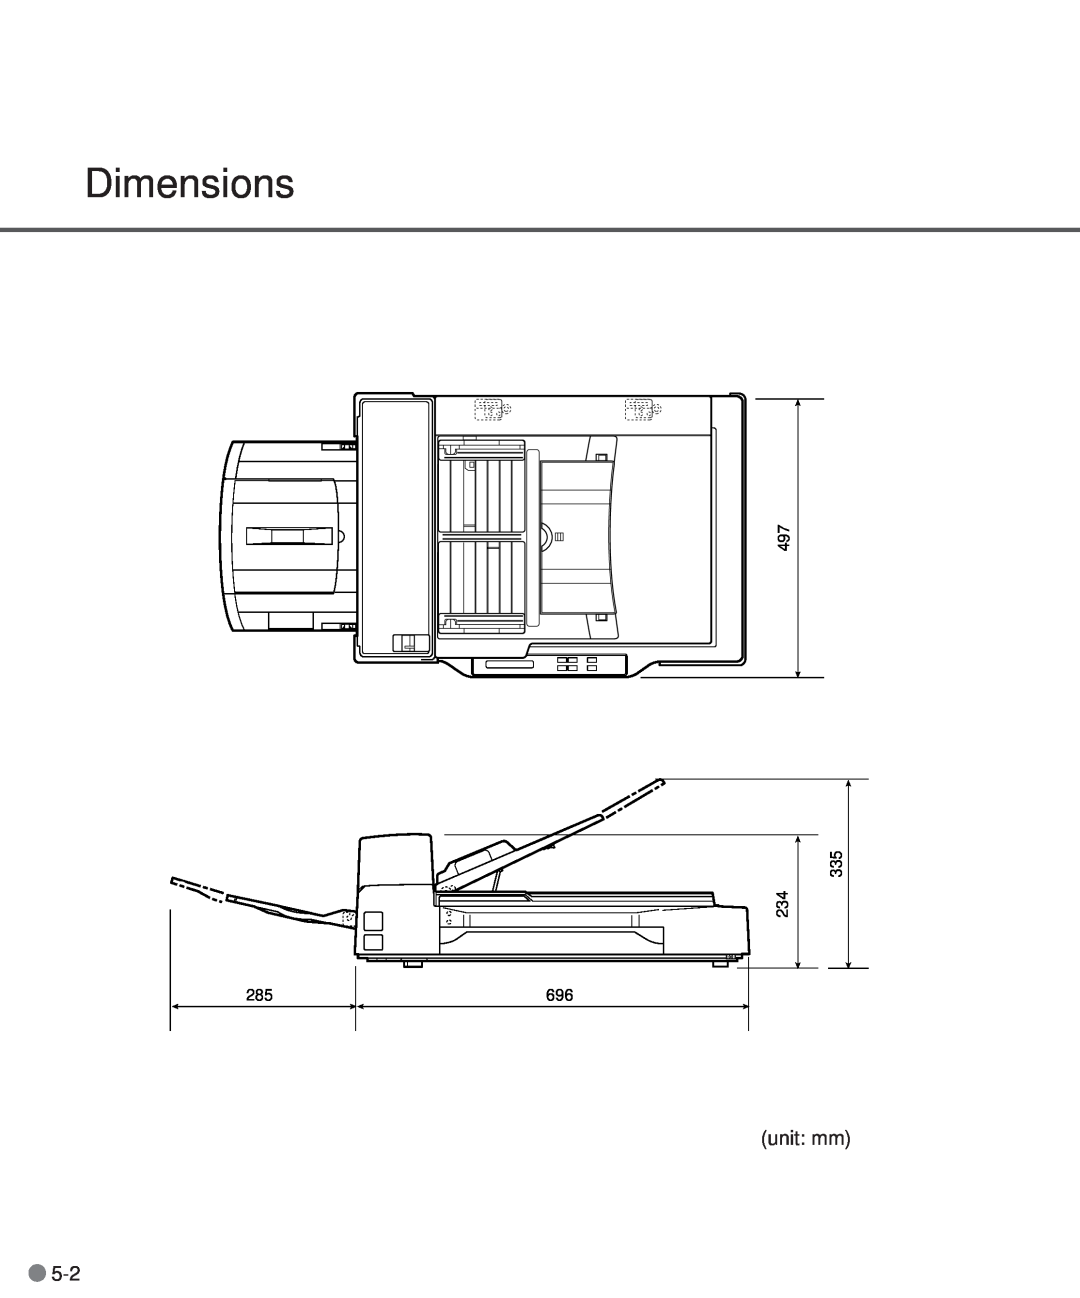 Fujitsu M3097DG, M3097DE manual Dimensions, unit mm 